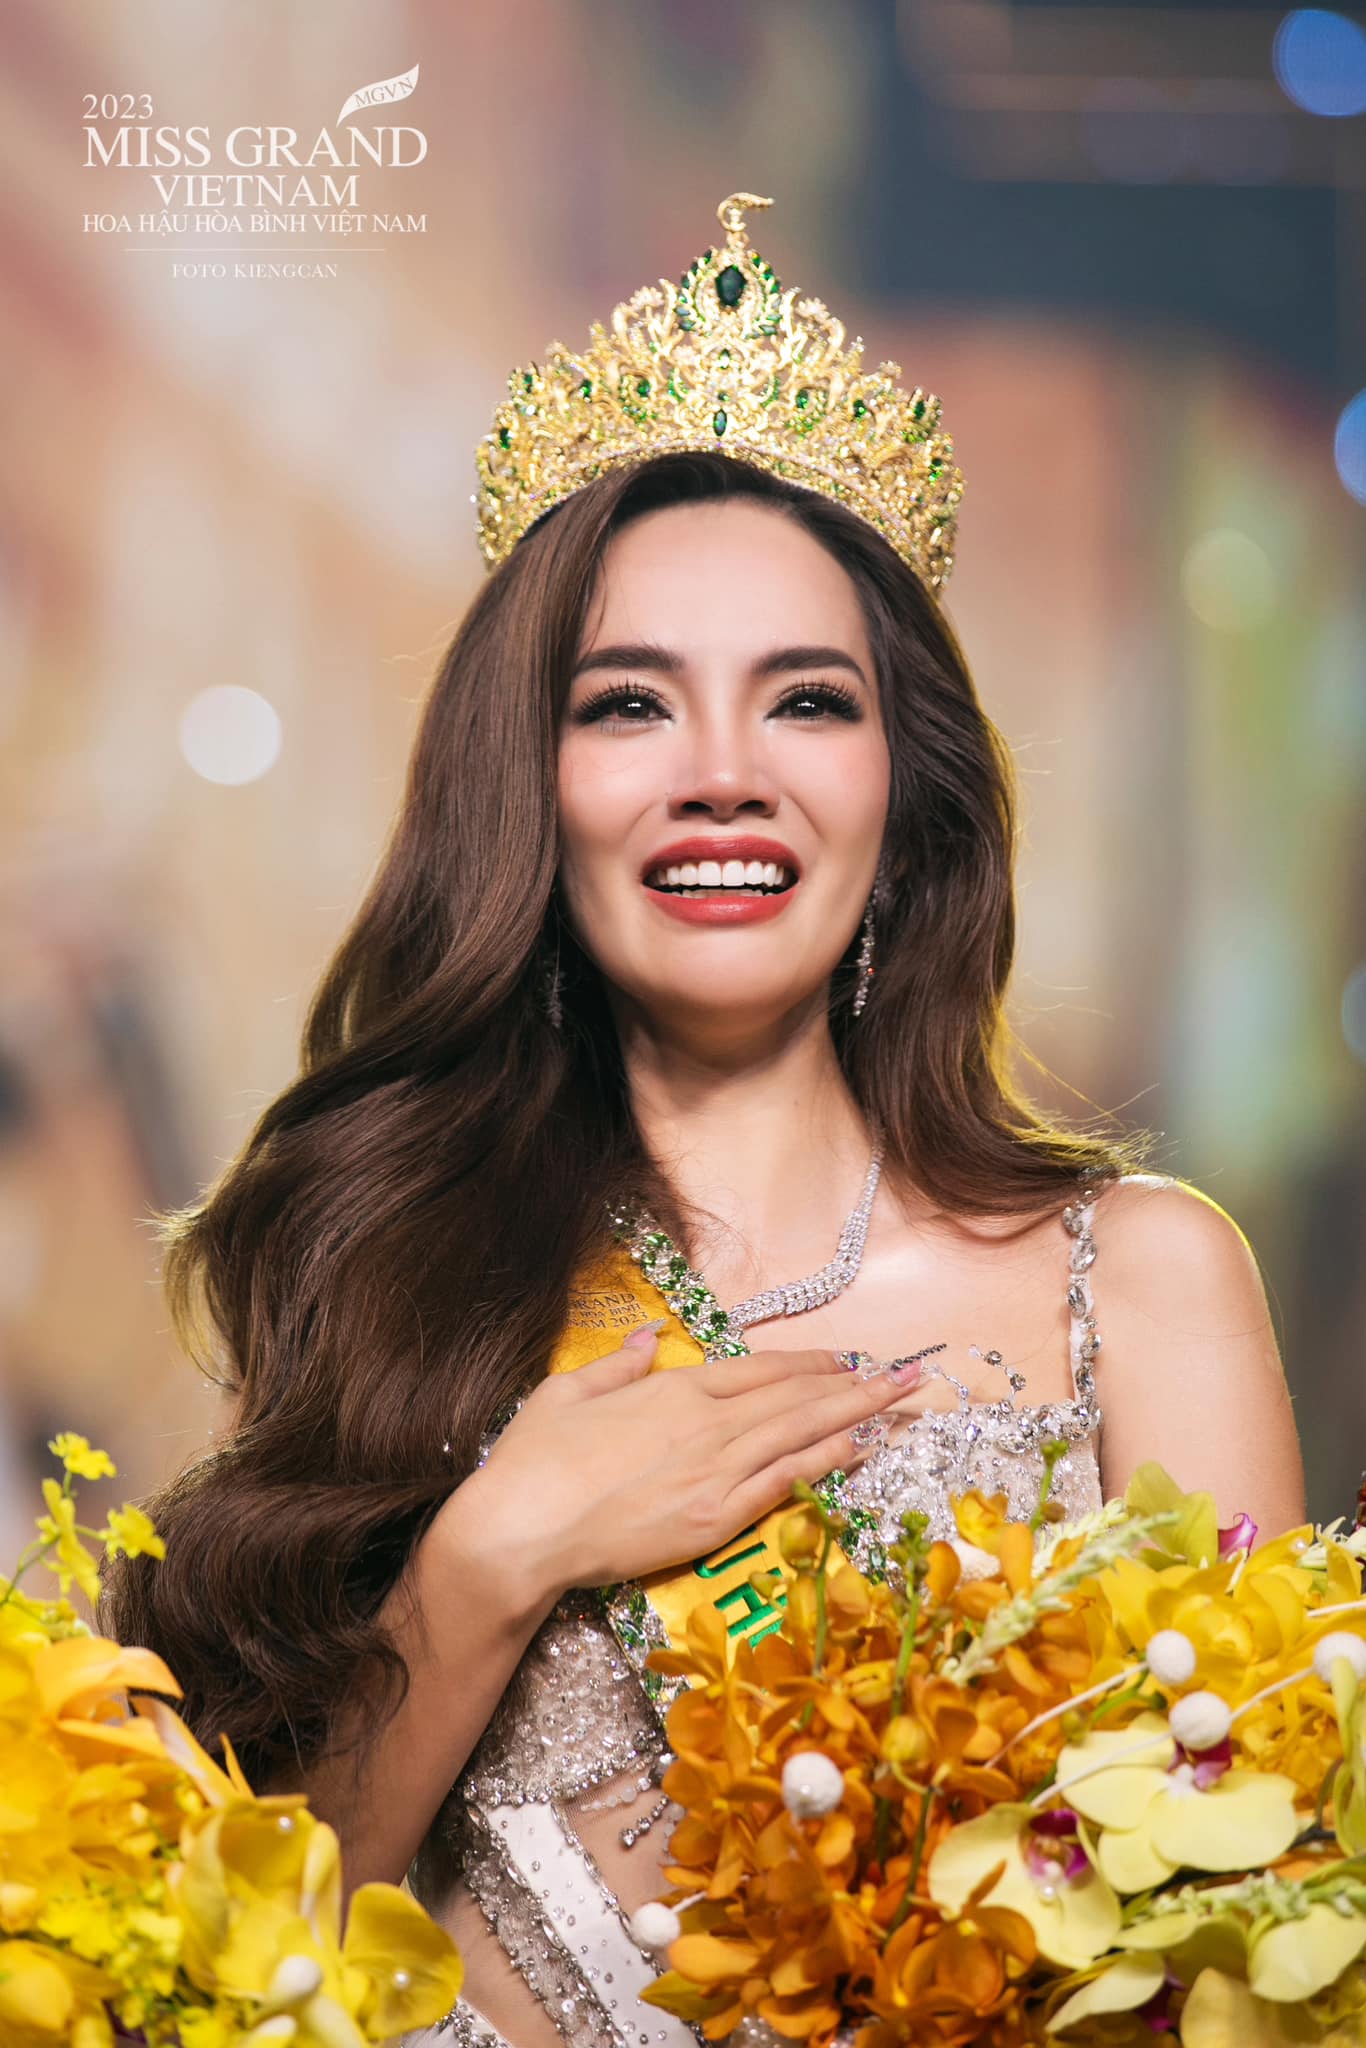 Hành trình từ kiến trúc sư Khánh Hòa đến Á hậu 4 Miss Grand của Hoàng Phương - 1